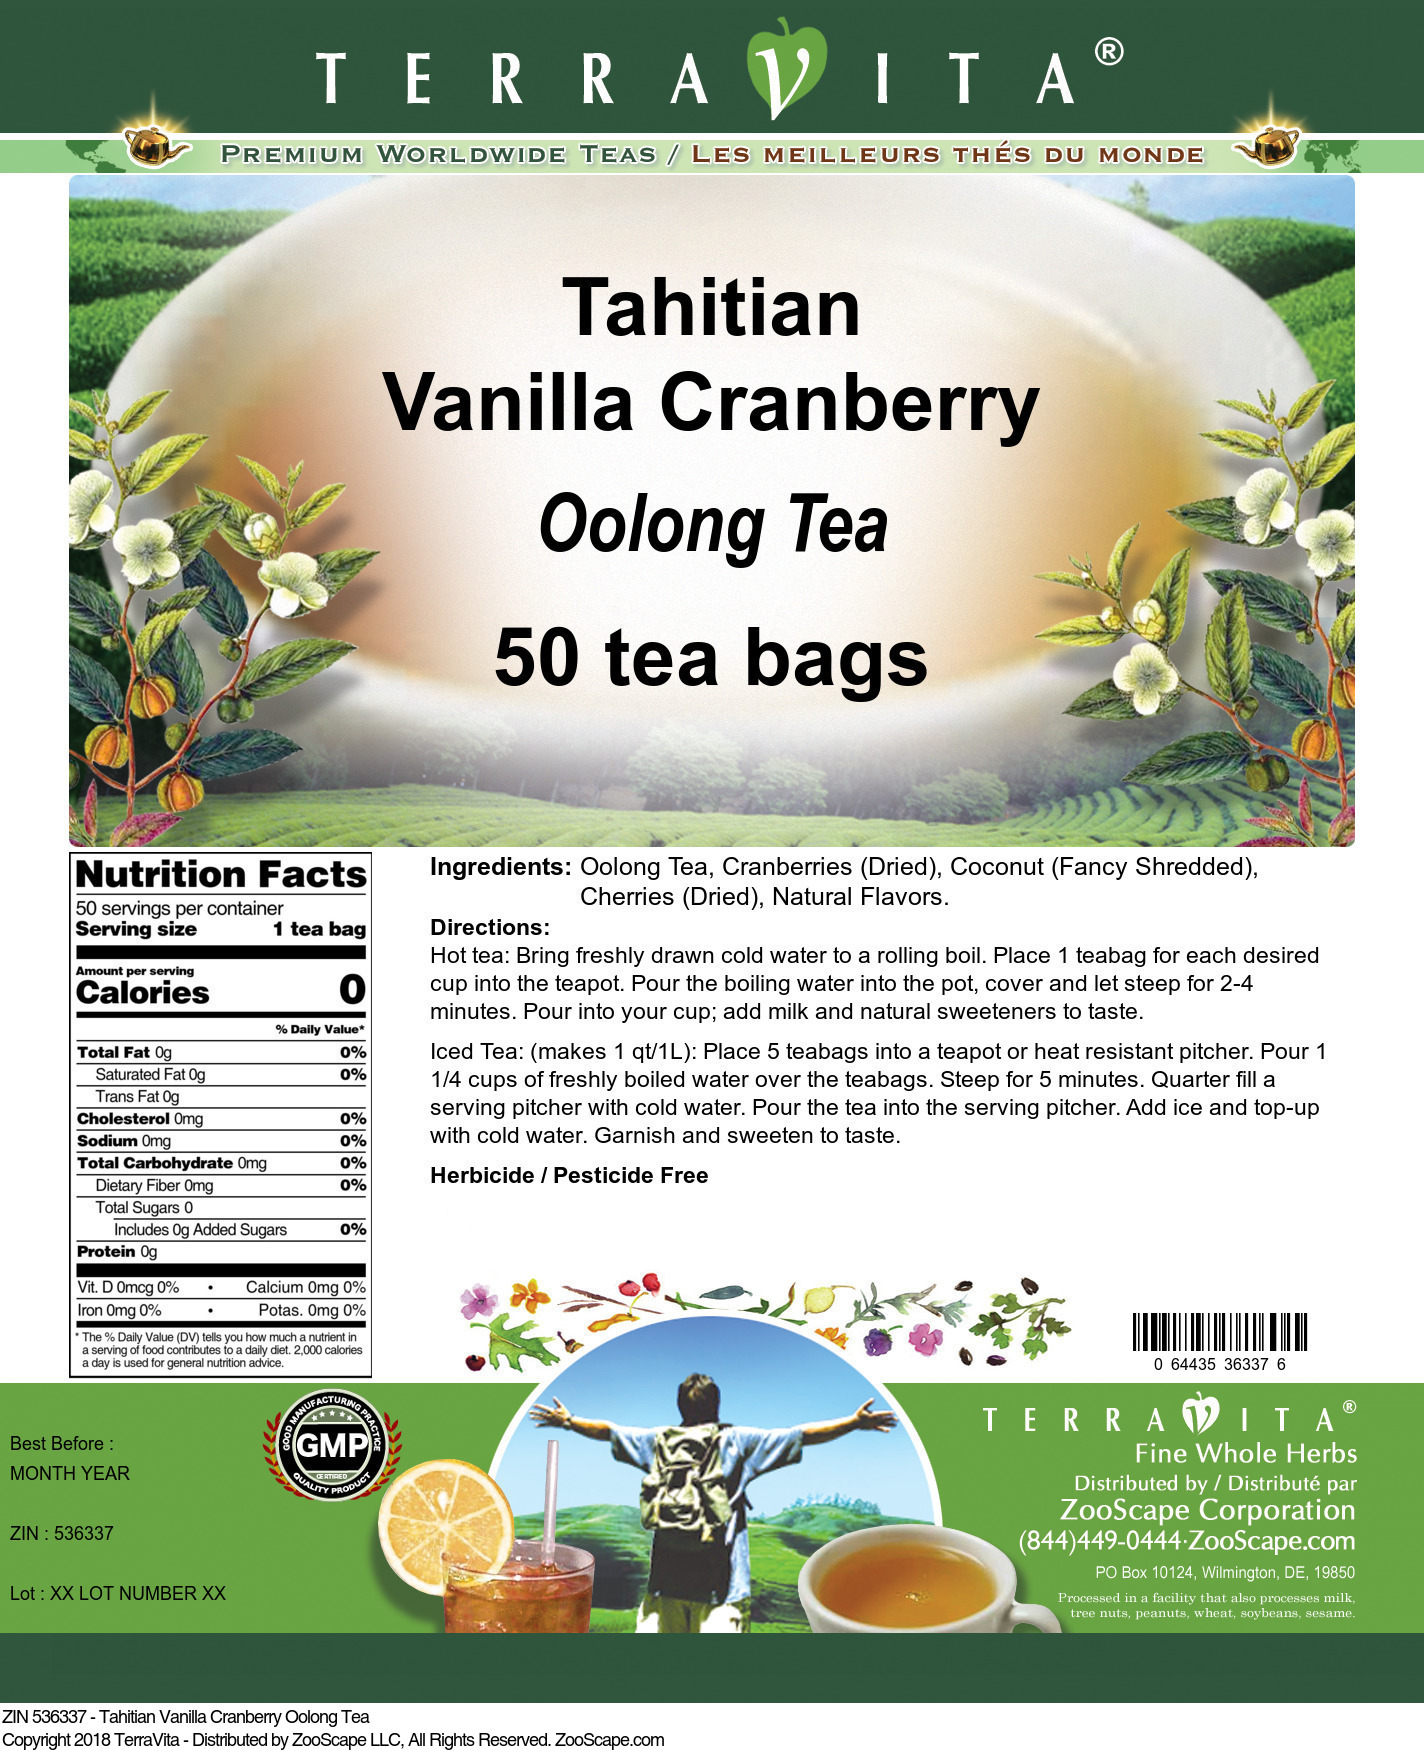 Tahitian Vanilla Cranberry Oolong Tea - Label